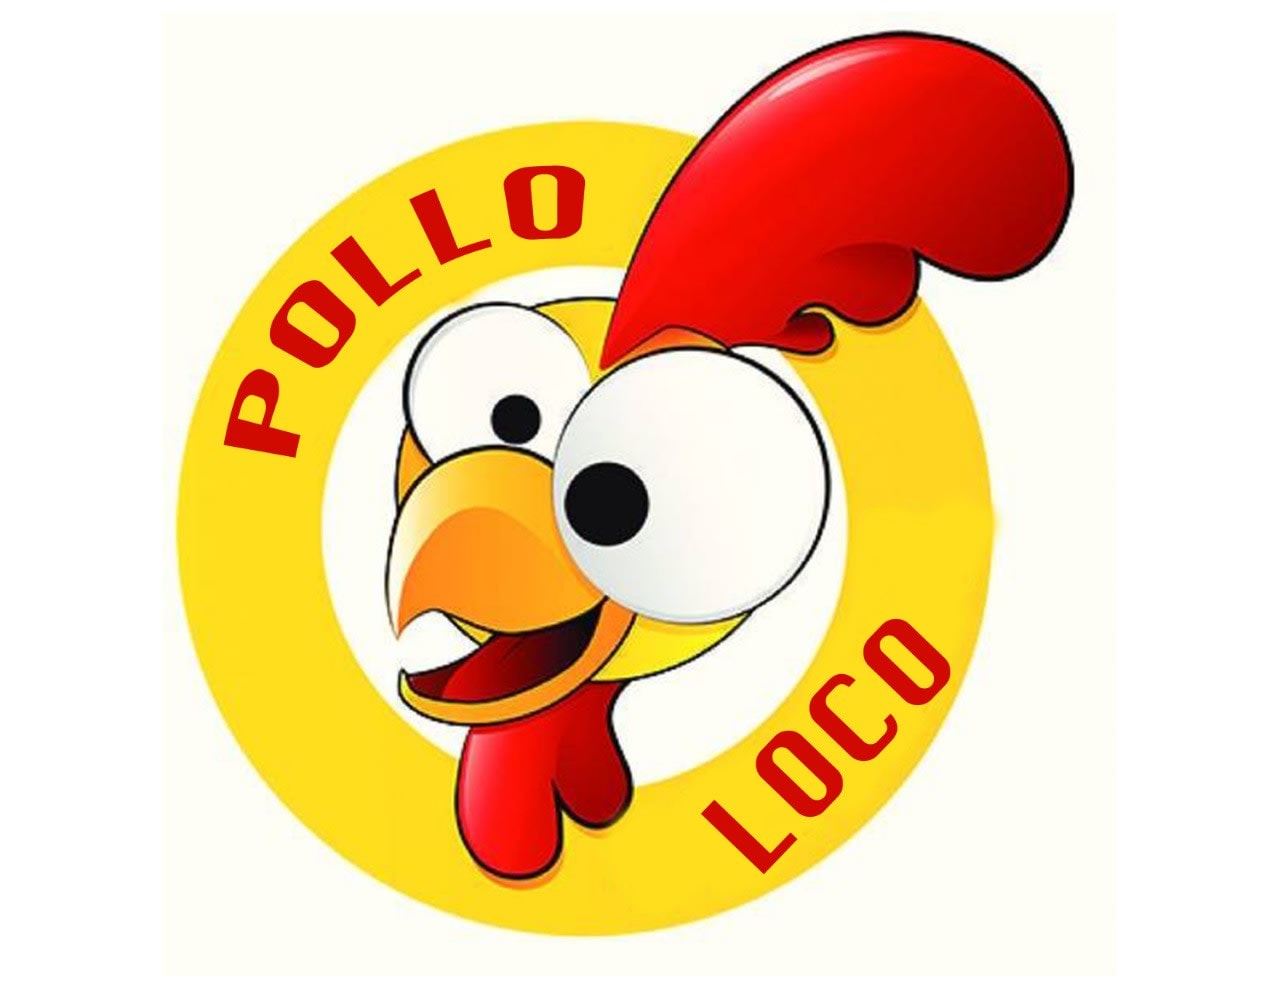 Tacos Pollo Loco